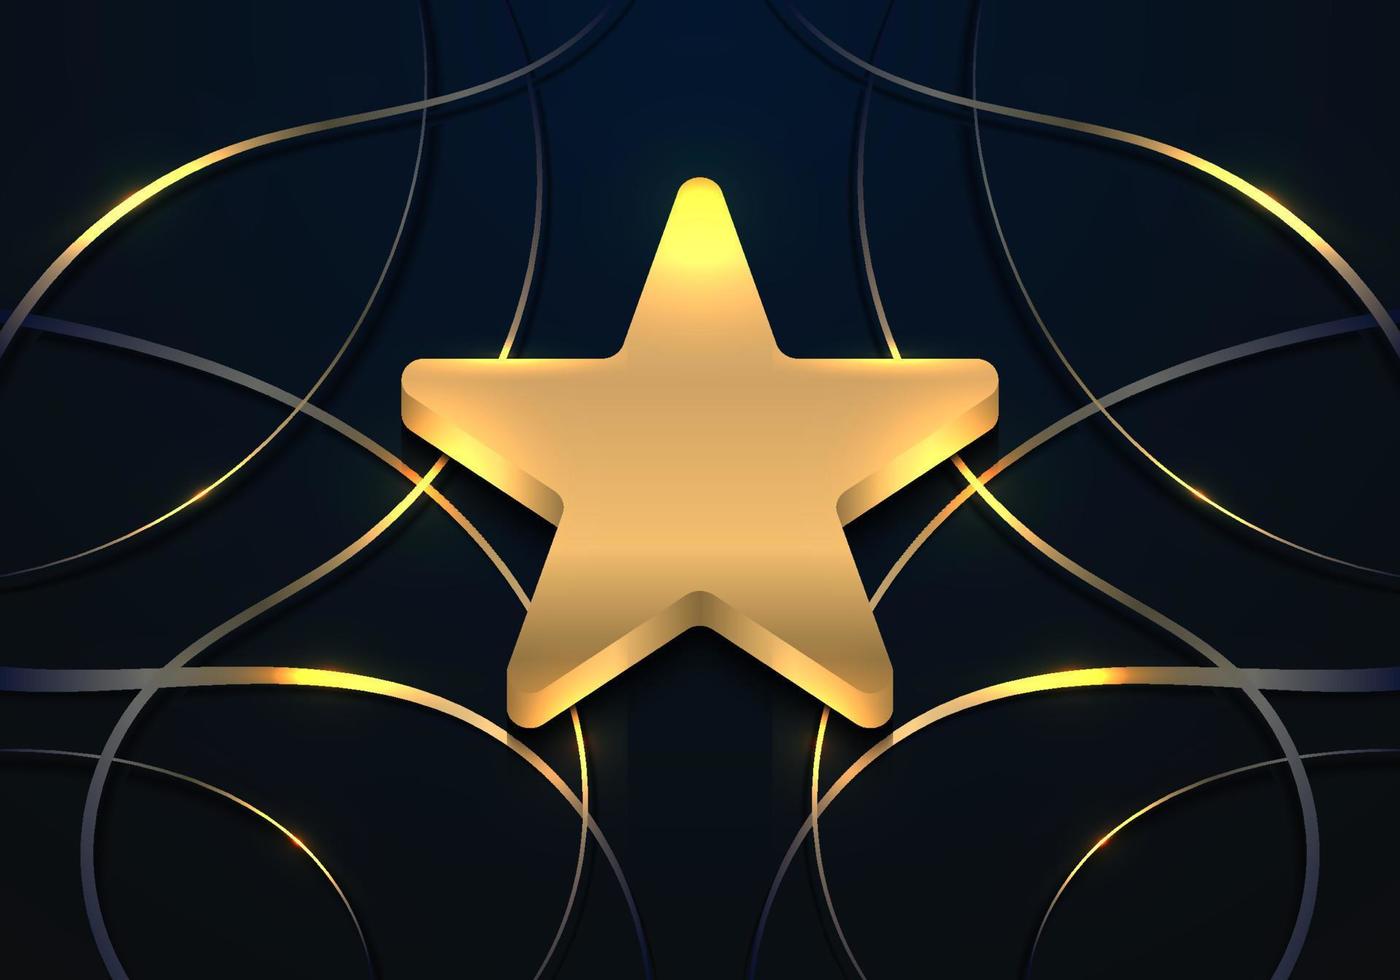 insignia de premio de estrella dorada 3d de lujo con elementos abstractos de líneas doradas onduladas sobre fondo azul oscuro vector